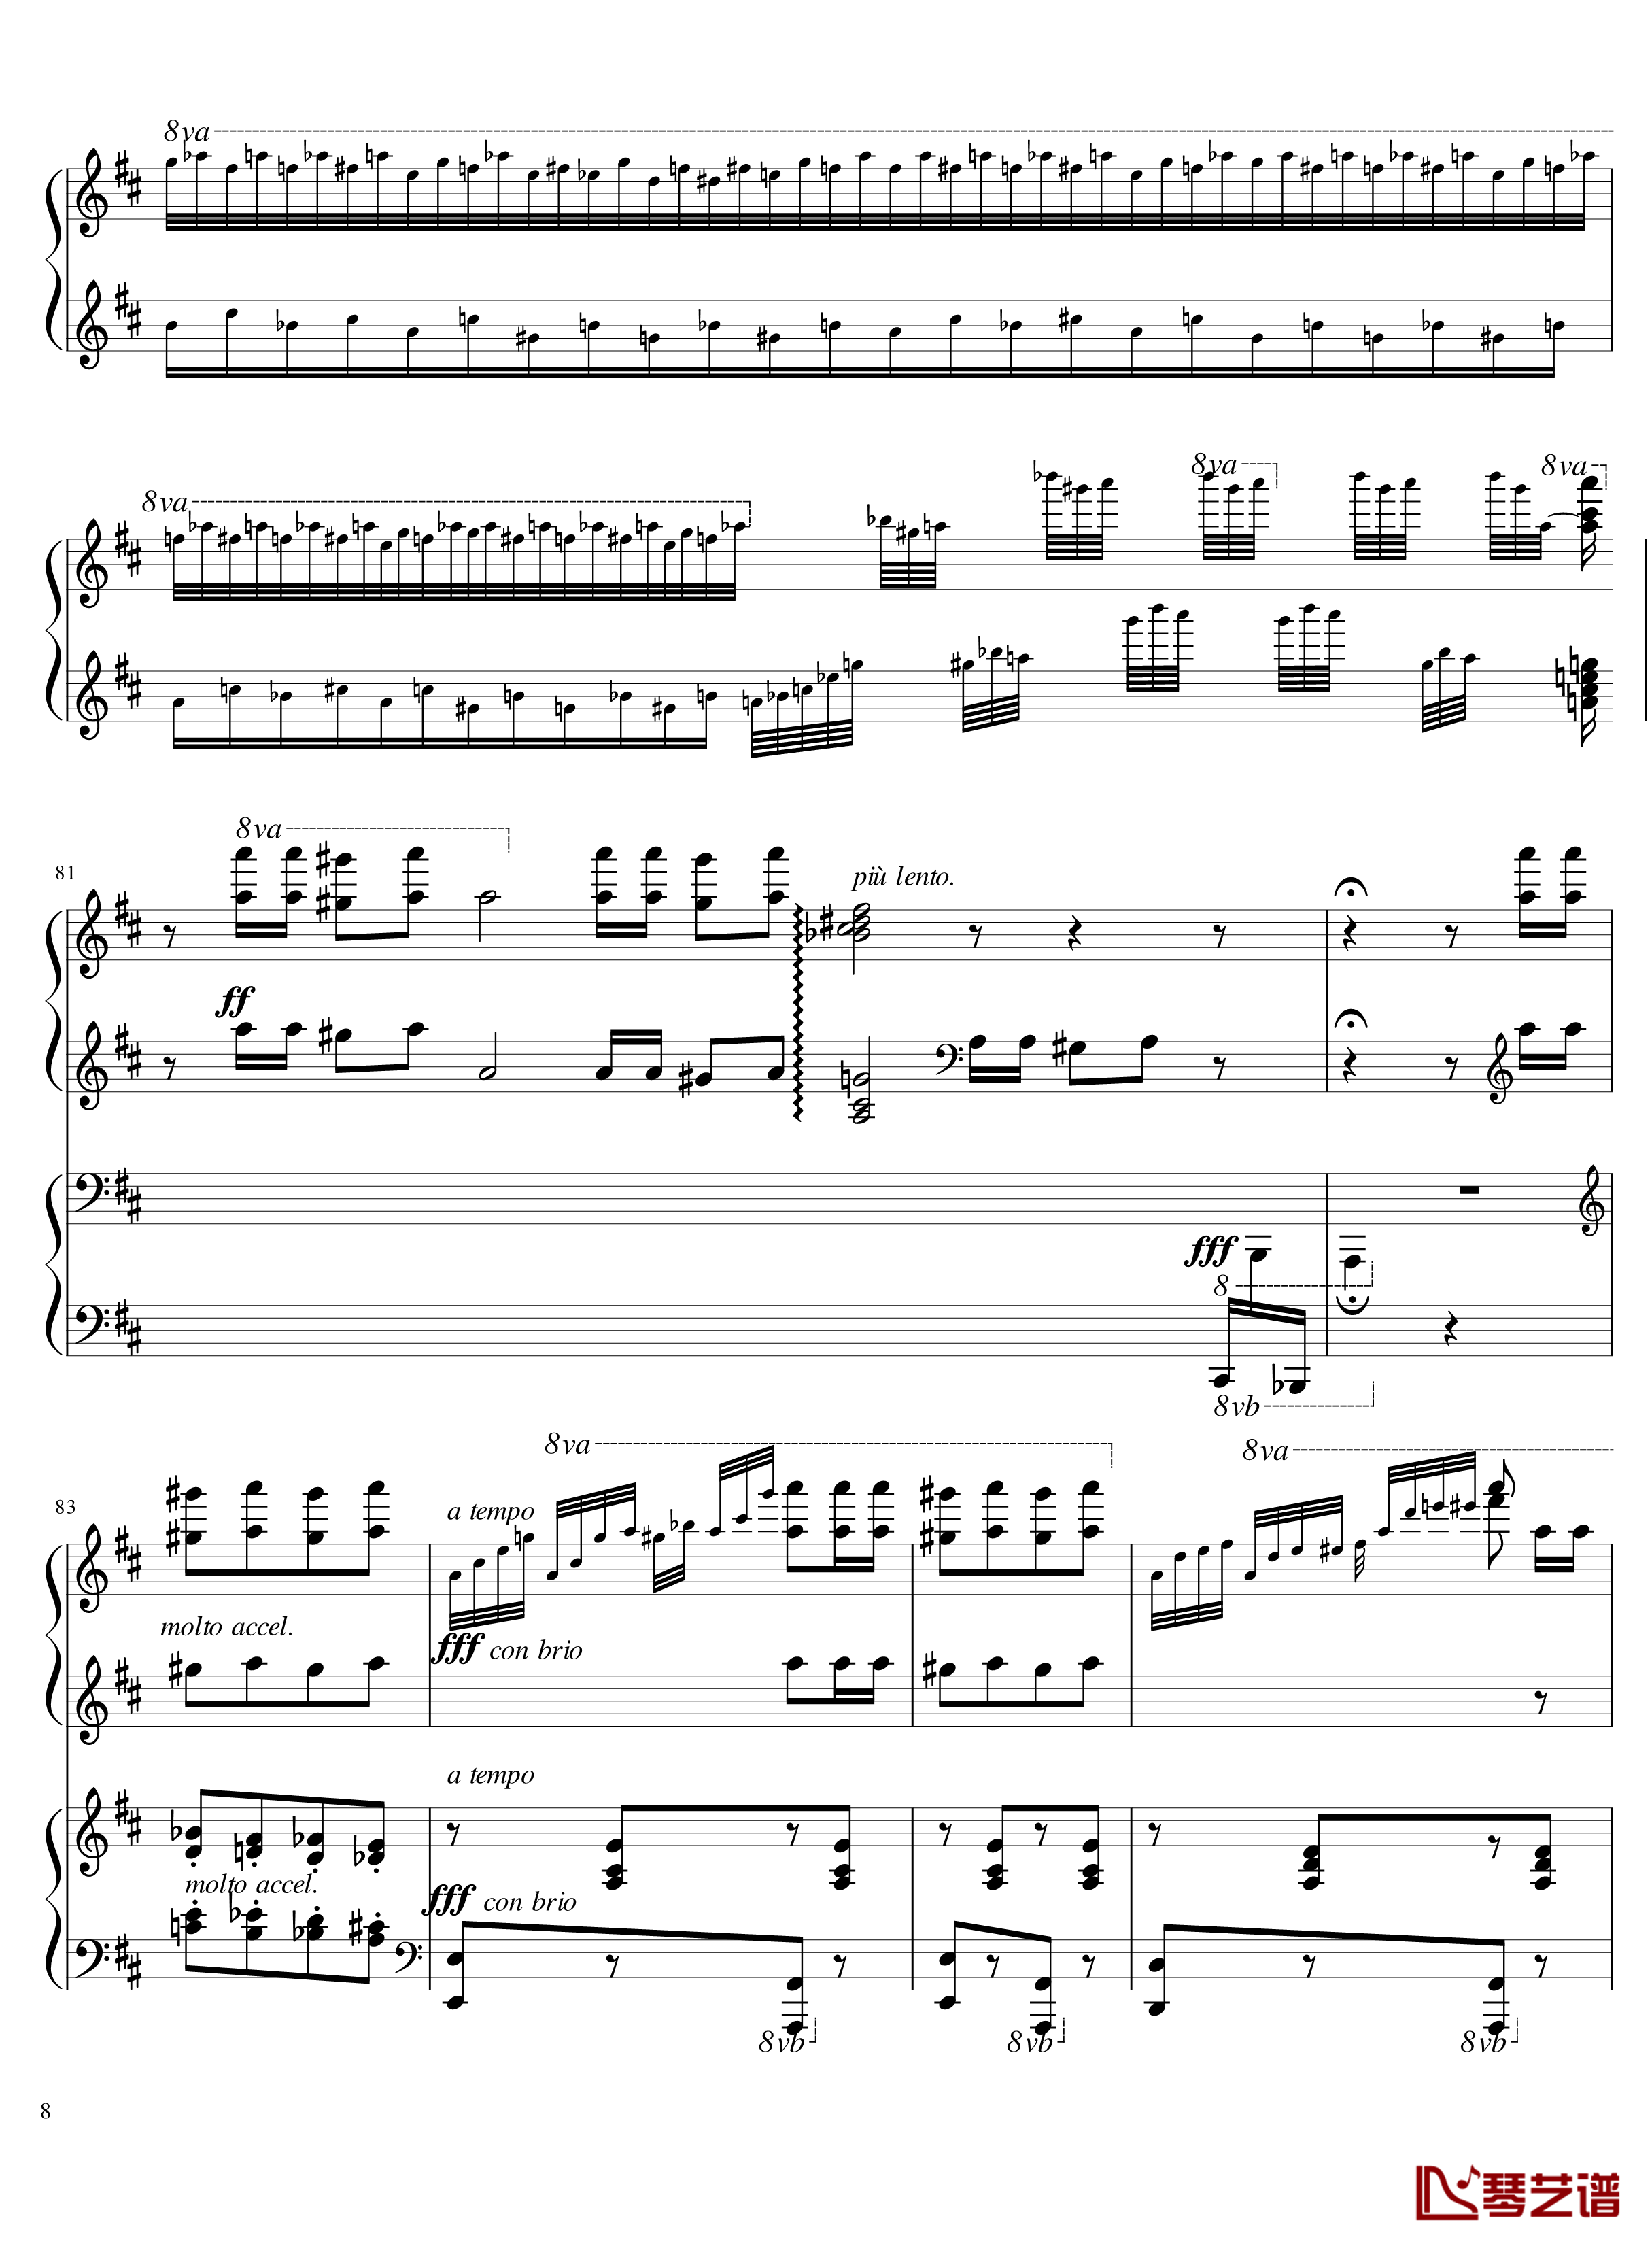 Italian Polka钢琴谱-意大利波尔卡-拉赫马尼若夫8